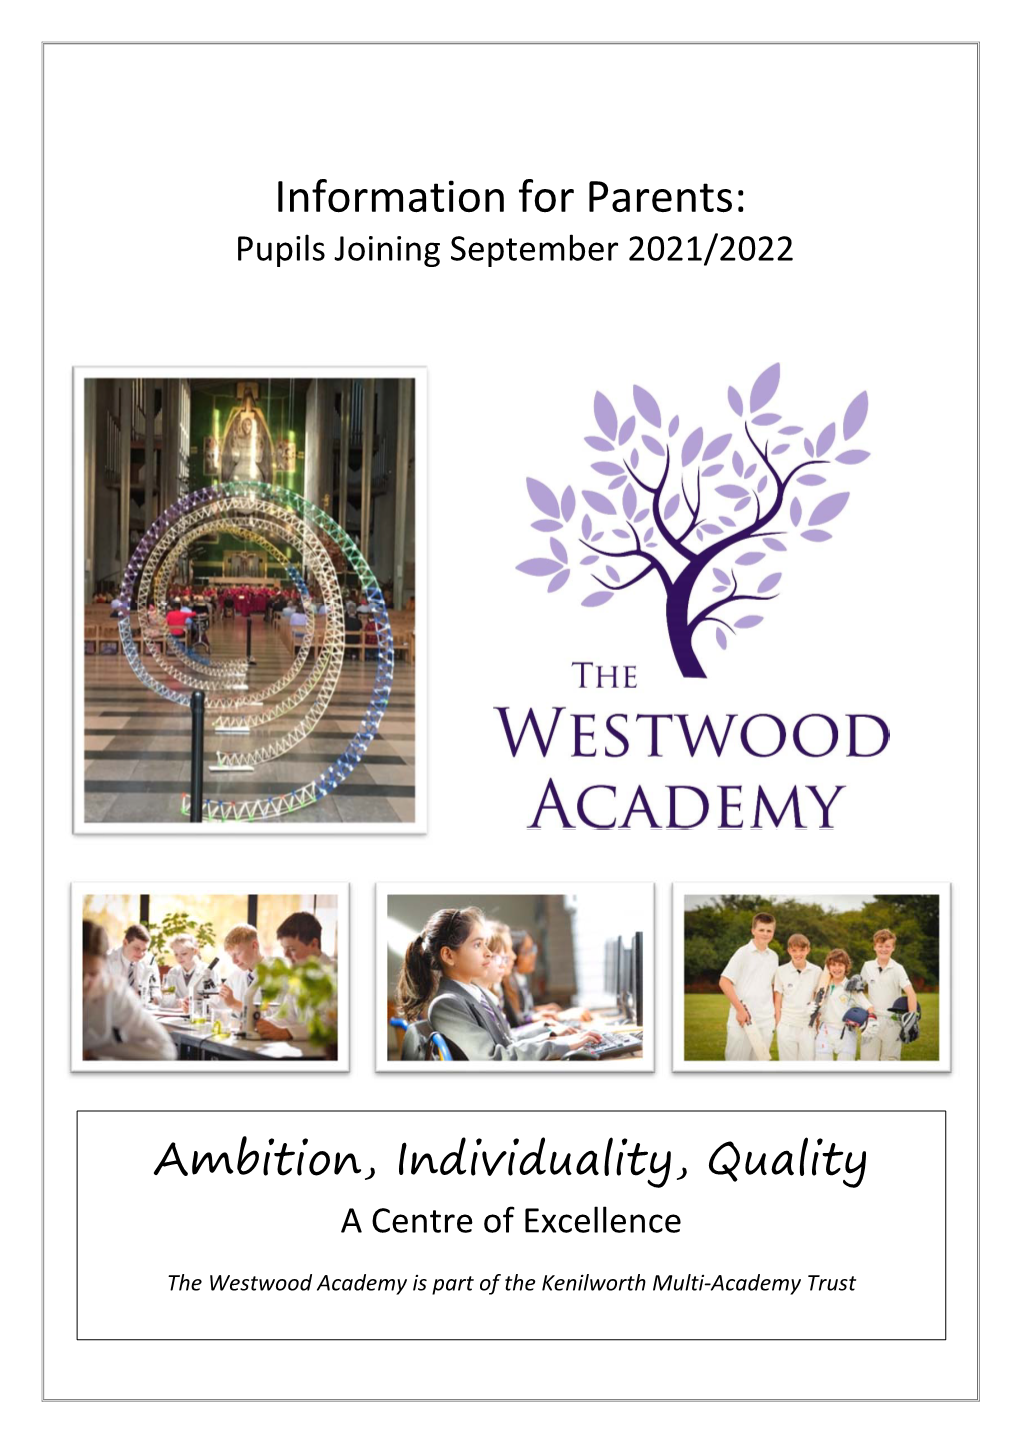 Information for Parents: Pupils Joining September 2021/2022